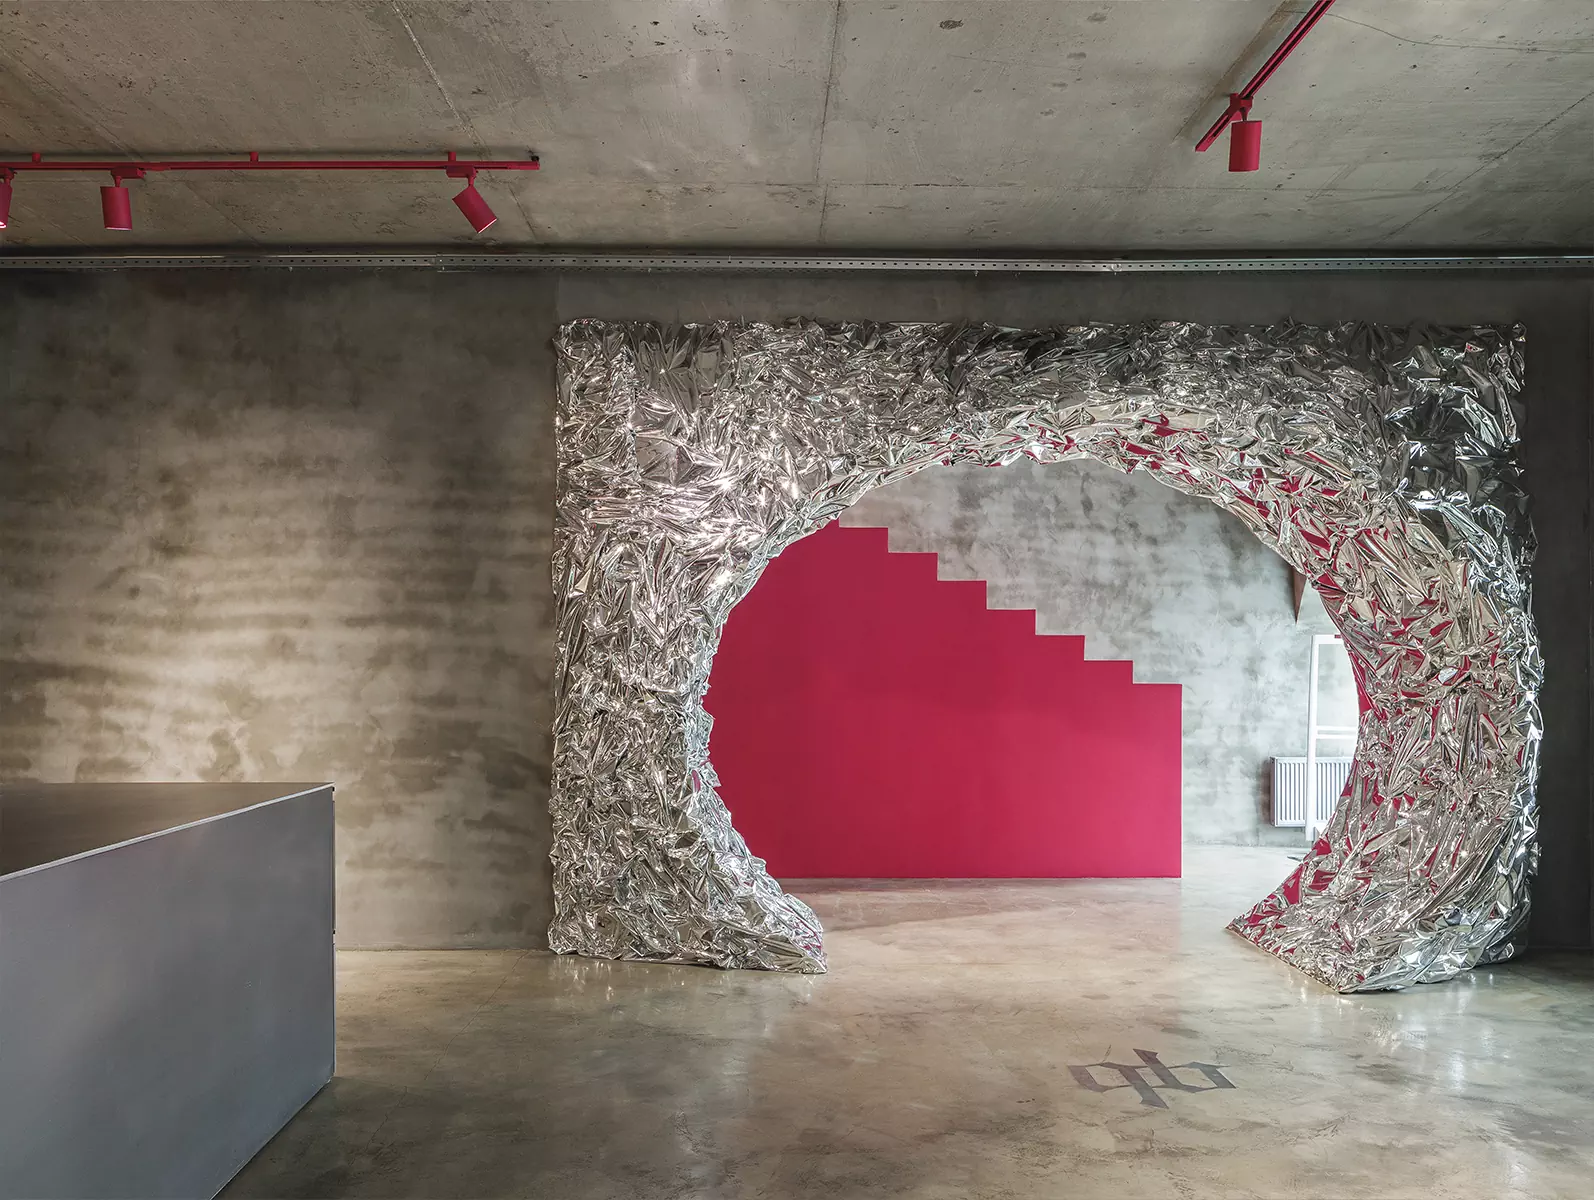 Скульптурная розовая лестница в интерьере казанского магазина одежды — проект бюро AR ARCHITECTS